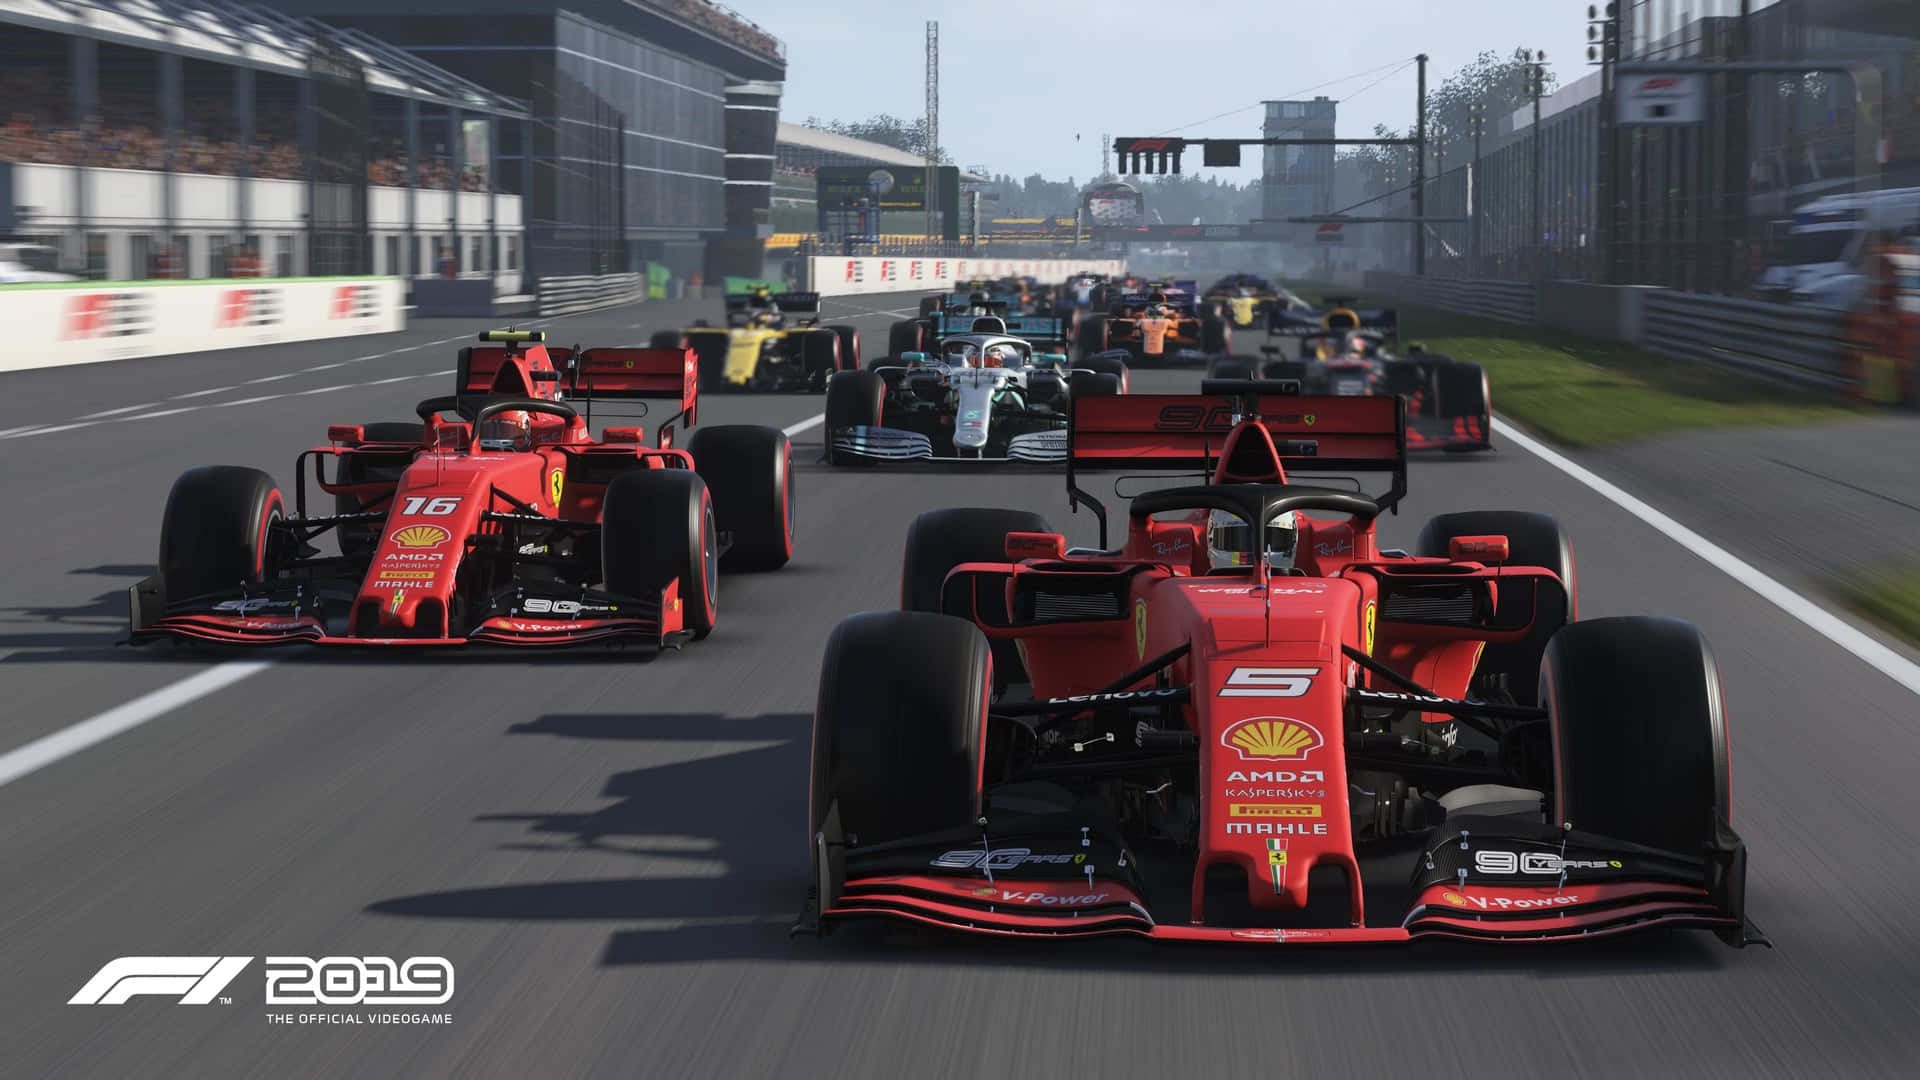 F1 2019 Screenshots